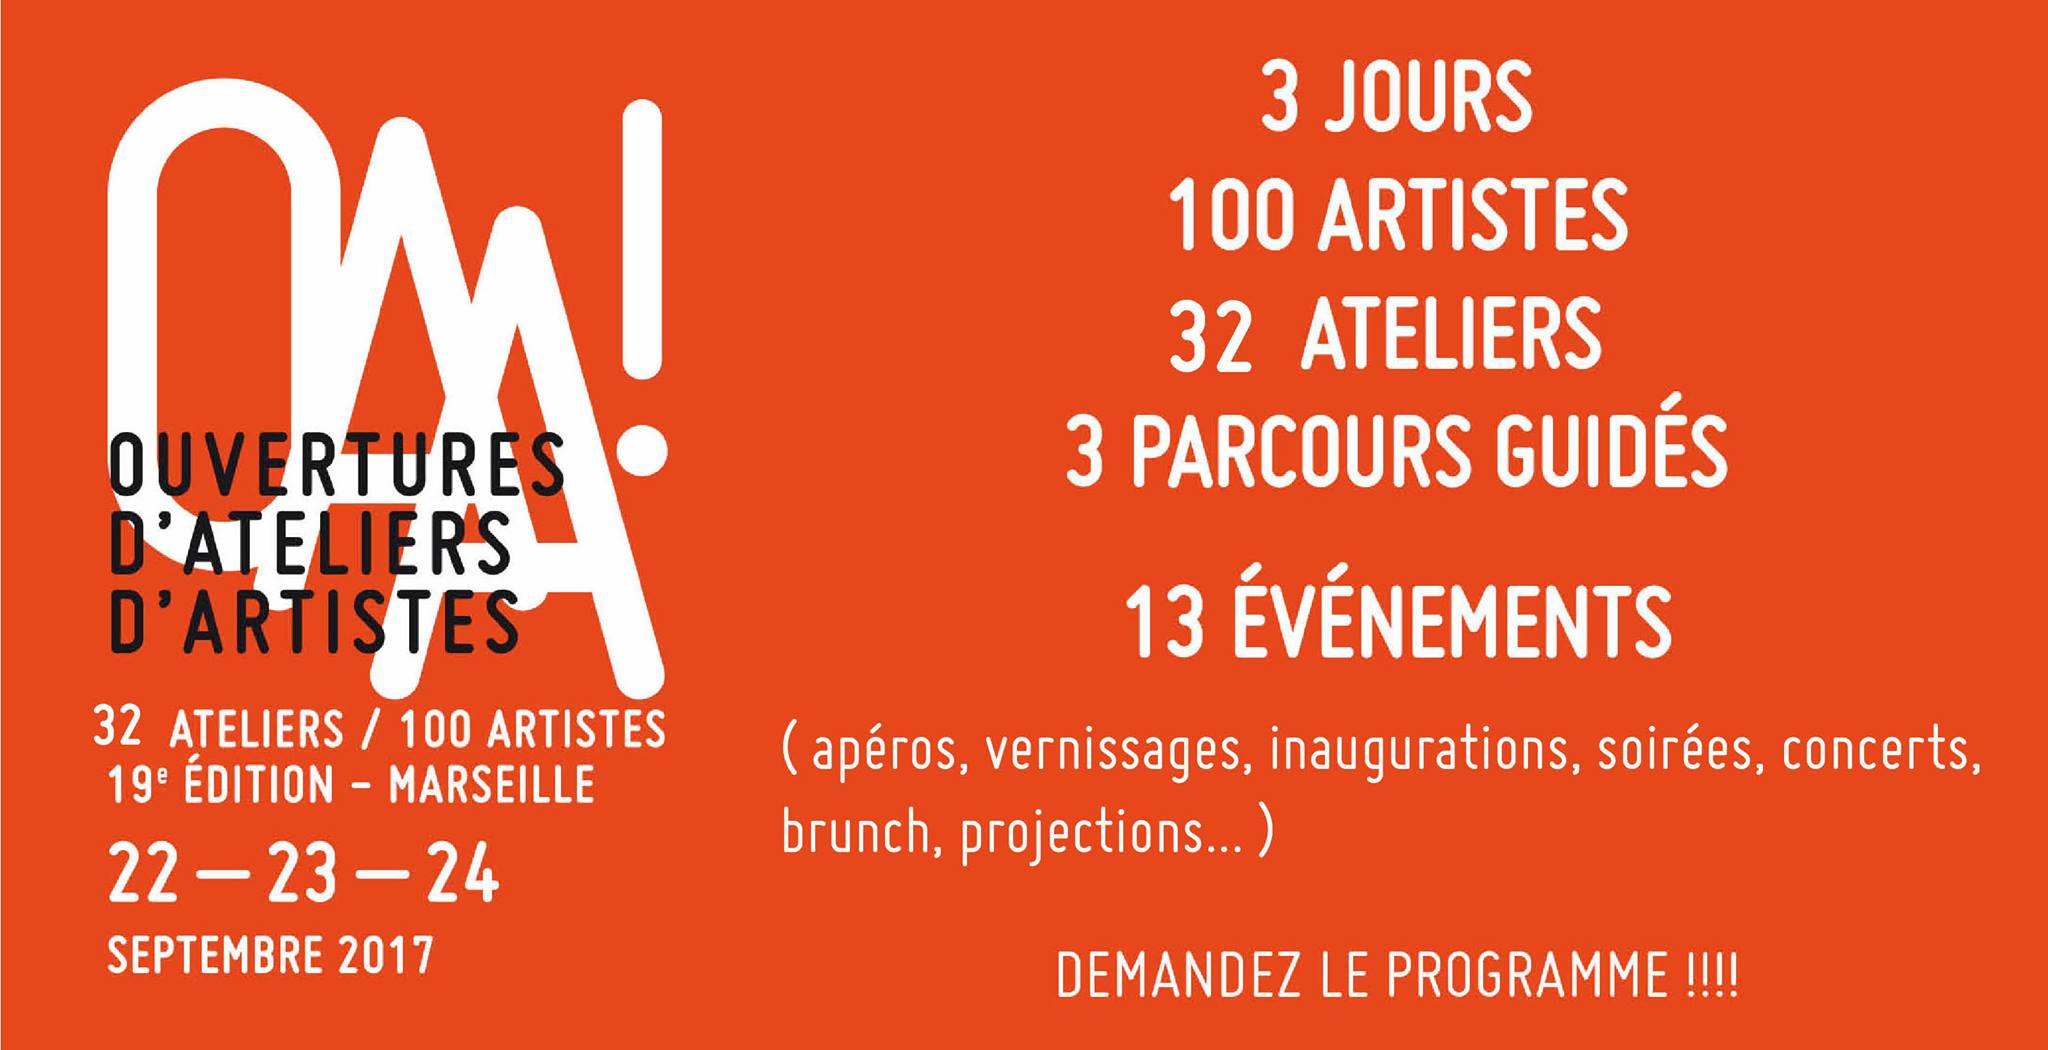 [ATELIERS] 22 ▷ 24/09 – OAA! Ouvertures d’Ateliers d’Artistes Marseille